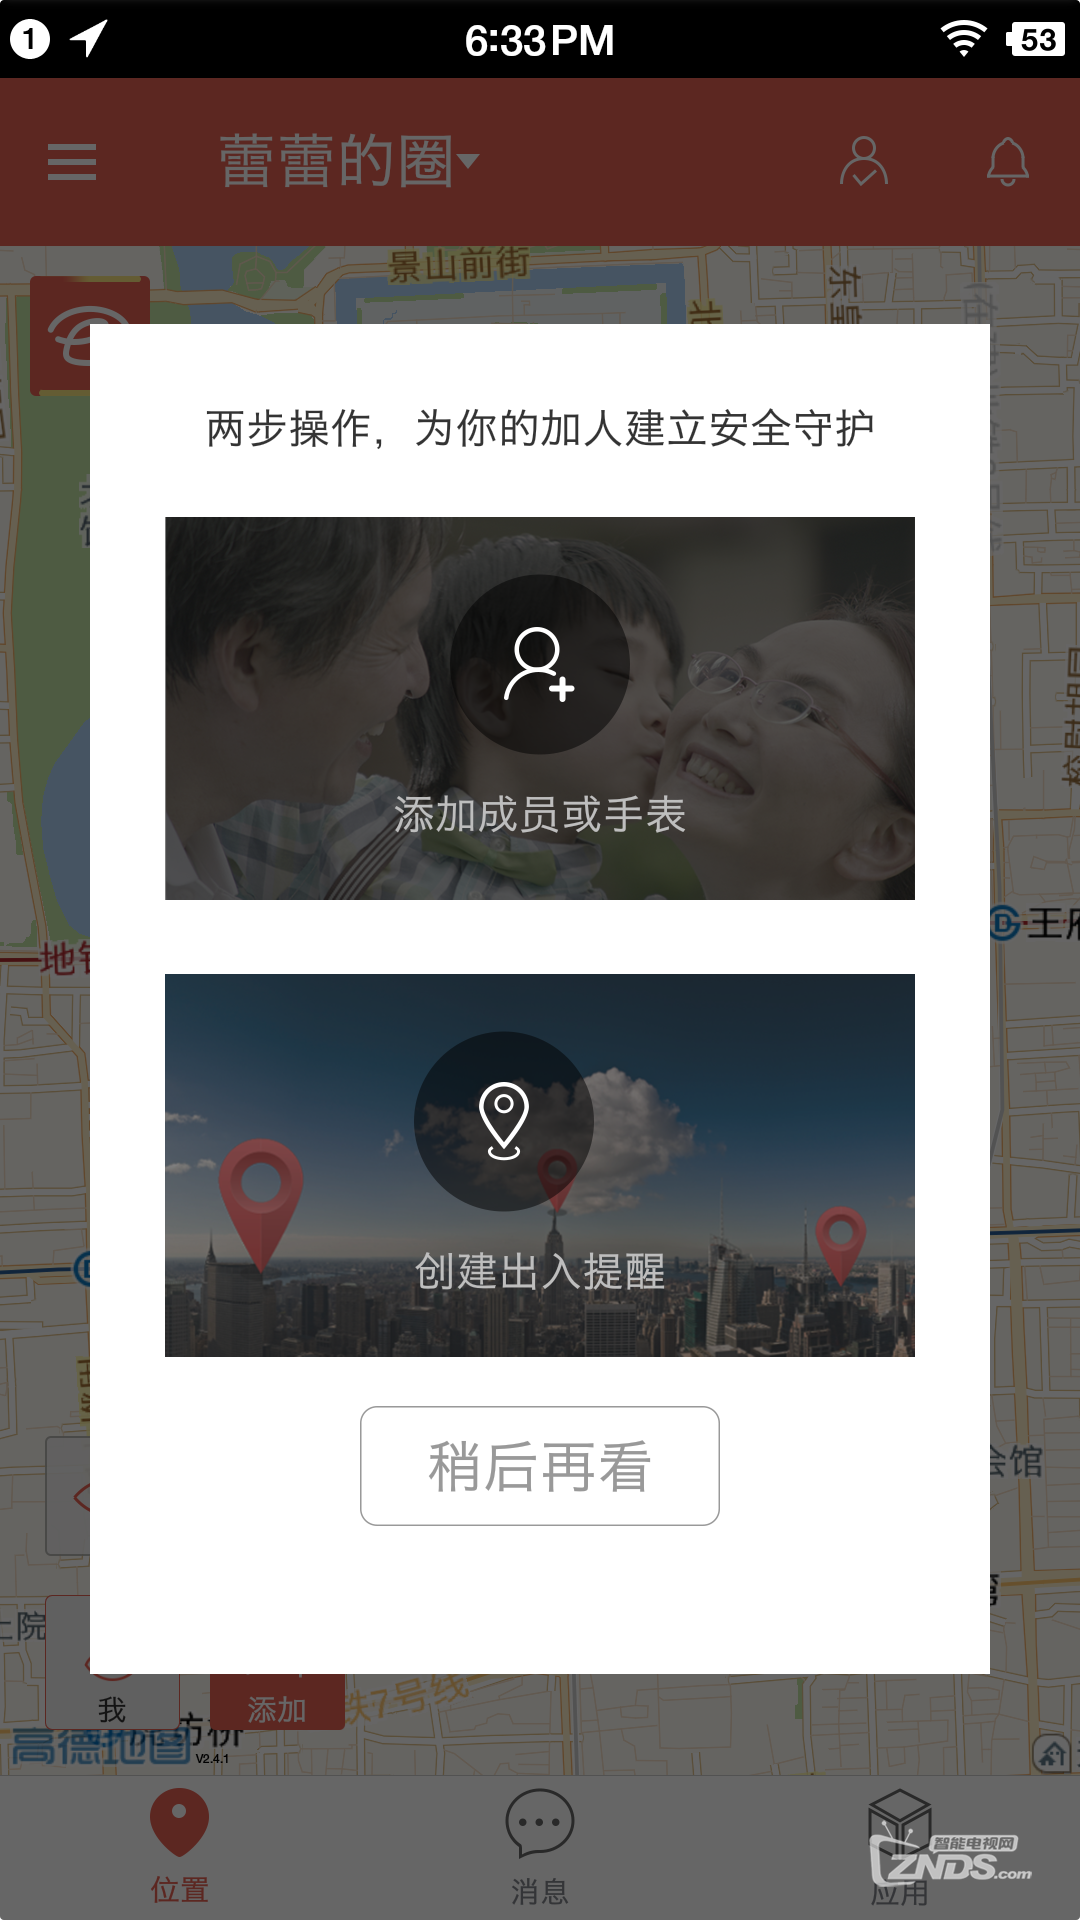 Screenshot_2015-10-23-18-33-16-841_芒果家.png